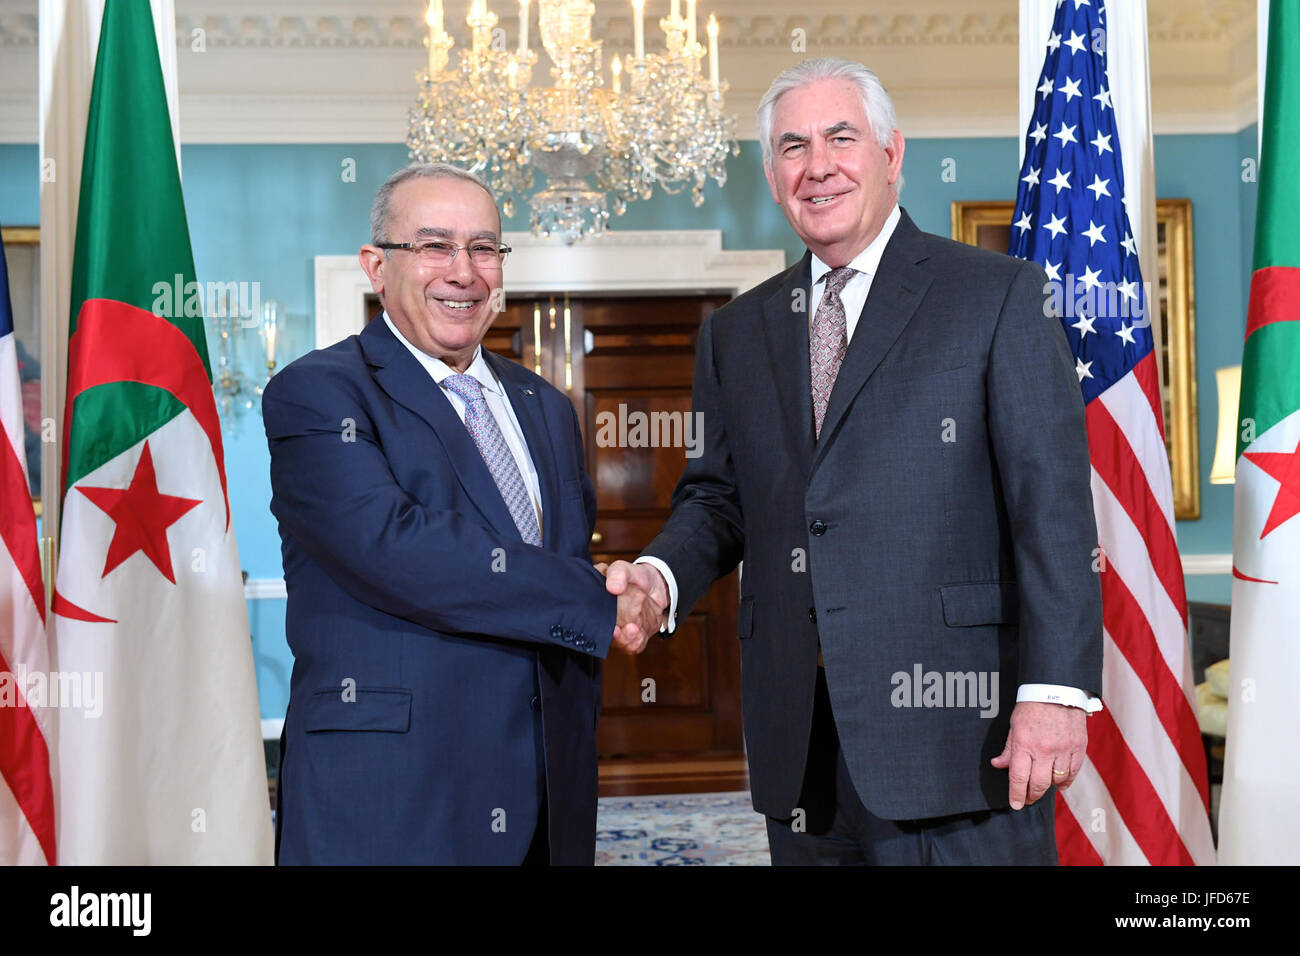 La secrétaire d'État des États-Unis, Rex Tillerson pose pour une photo avec le Ministre algérien des Affaires étrangères Ramtane Lamamra avant leur réunion bilatérale au département d'État des États-Unis à Washington, D.C., le 17 mai 2017. Banque D'Images